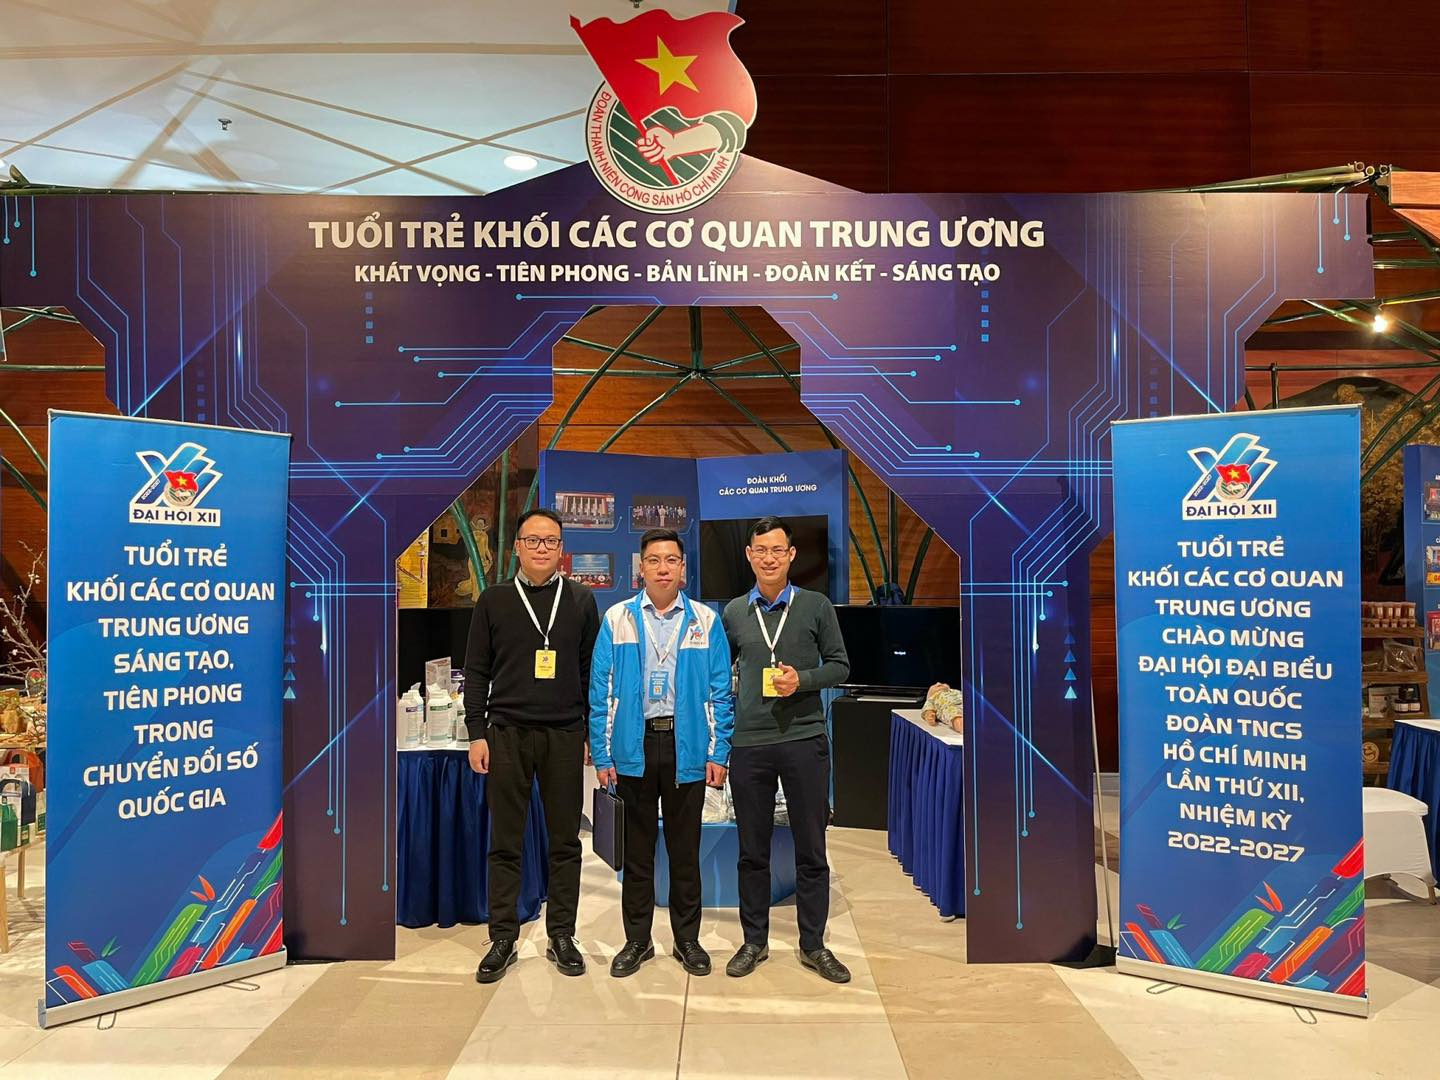 Đoàn TNCS Hồ Chí Minh Viện Hàn lâm KHCNVN tham dự Đại hội đại biểu toàn quốc Đoàn TNCS Hồ Chí Minh lần thứ XII, nhiệm kỳ 2022 - 2027